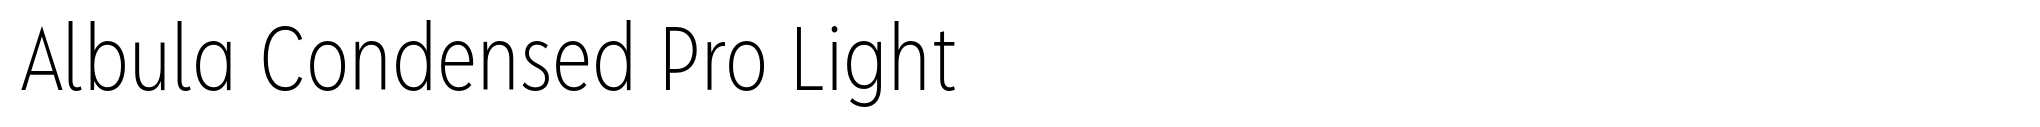 Albula Condensed Pro Light image